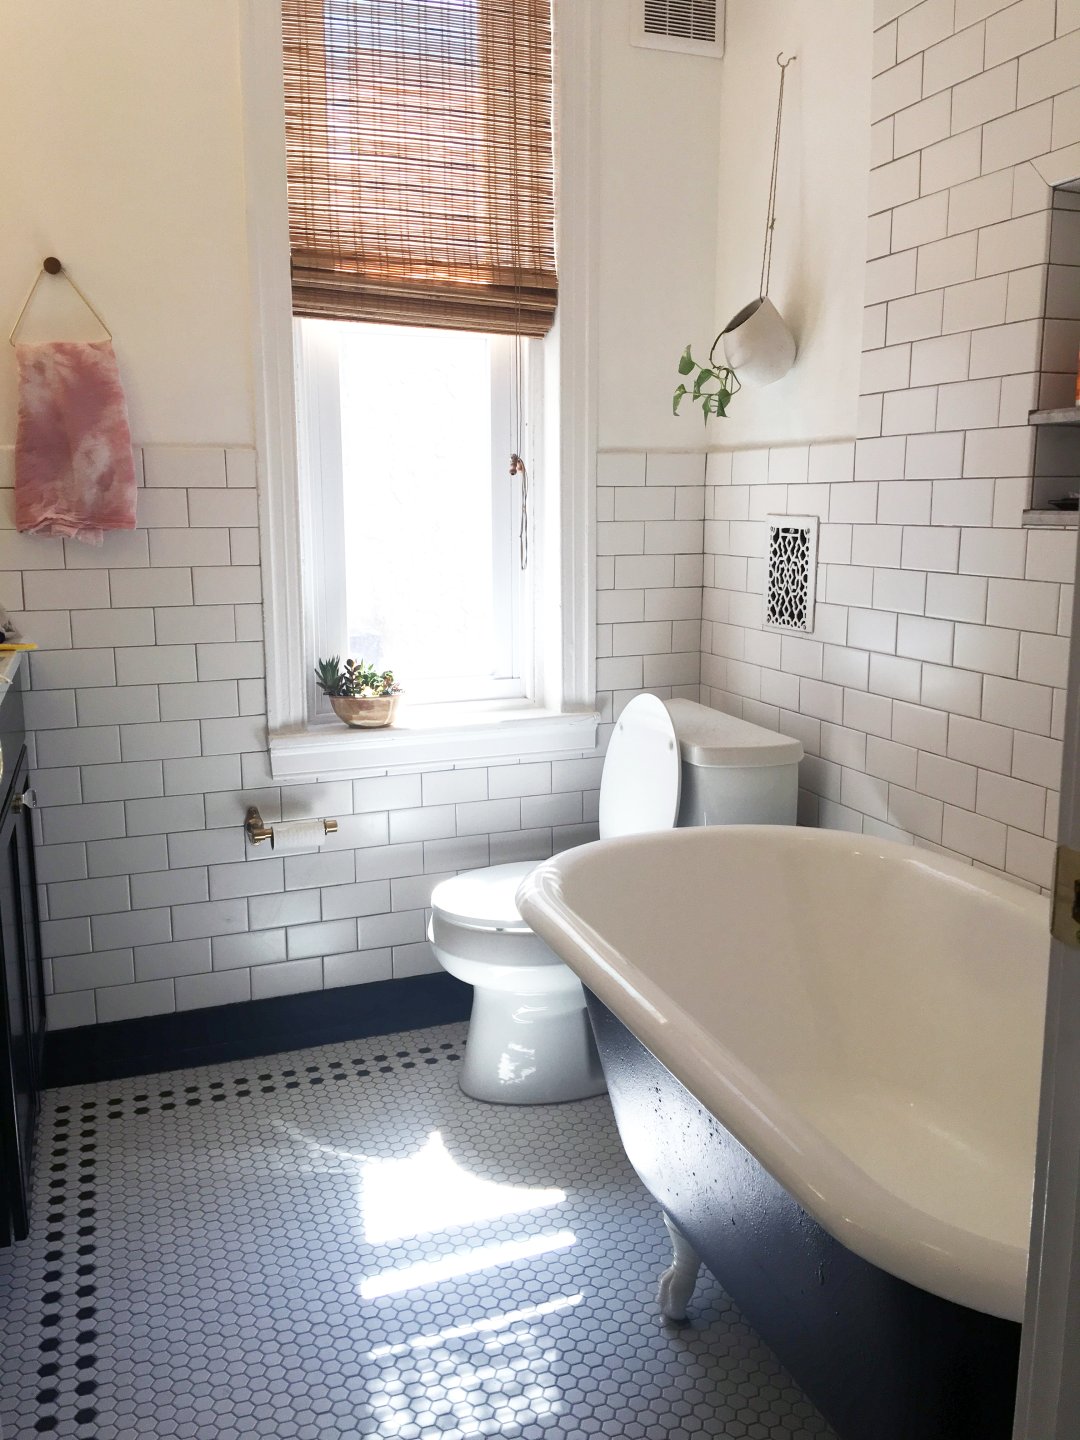 $20K Vintage Bathroom Remodel: Budget, Sources + More ...